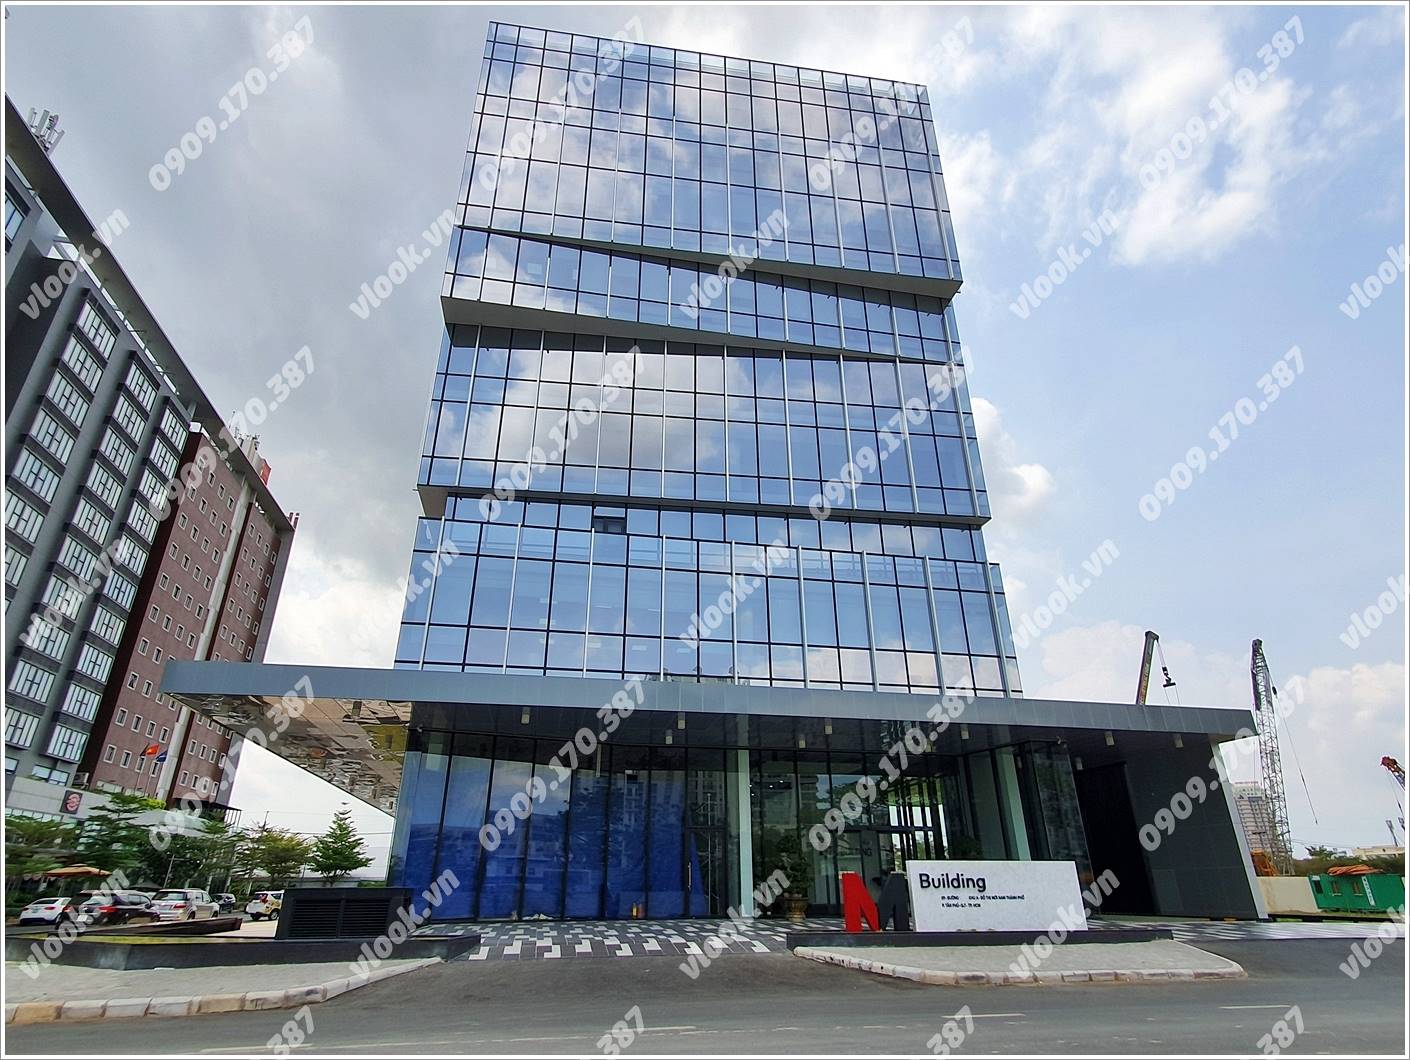 Mặt trước toàn cảnh oà cao ốc văn phòng cho thuê M Building, đường Số 8, quận 7, TP.HCM - vlook.vn